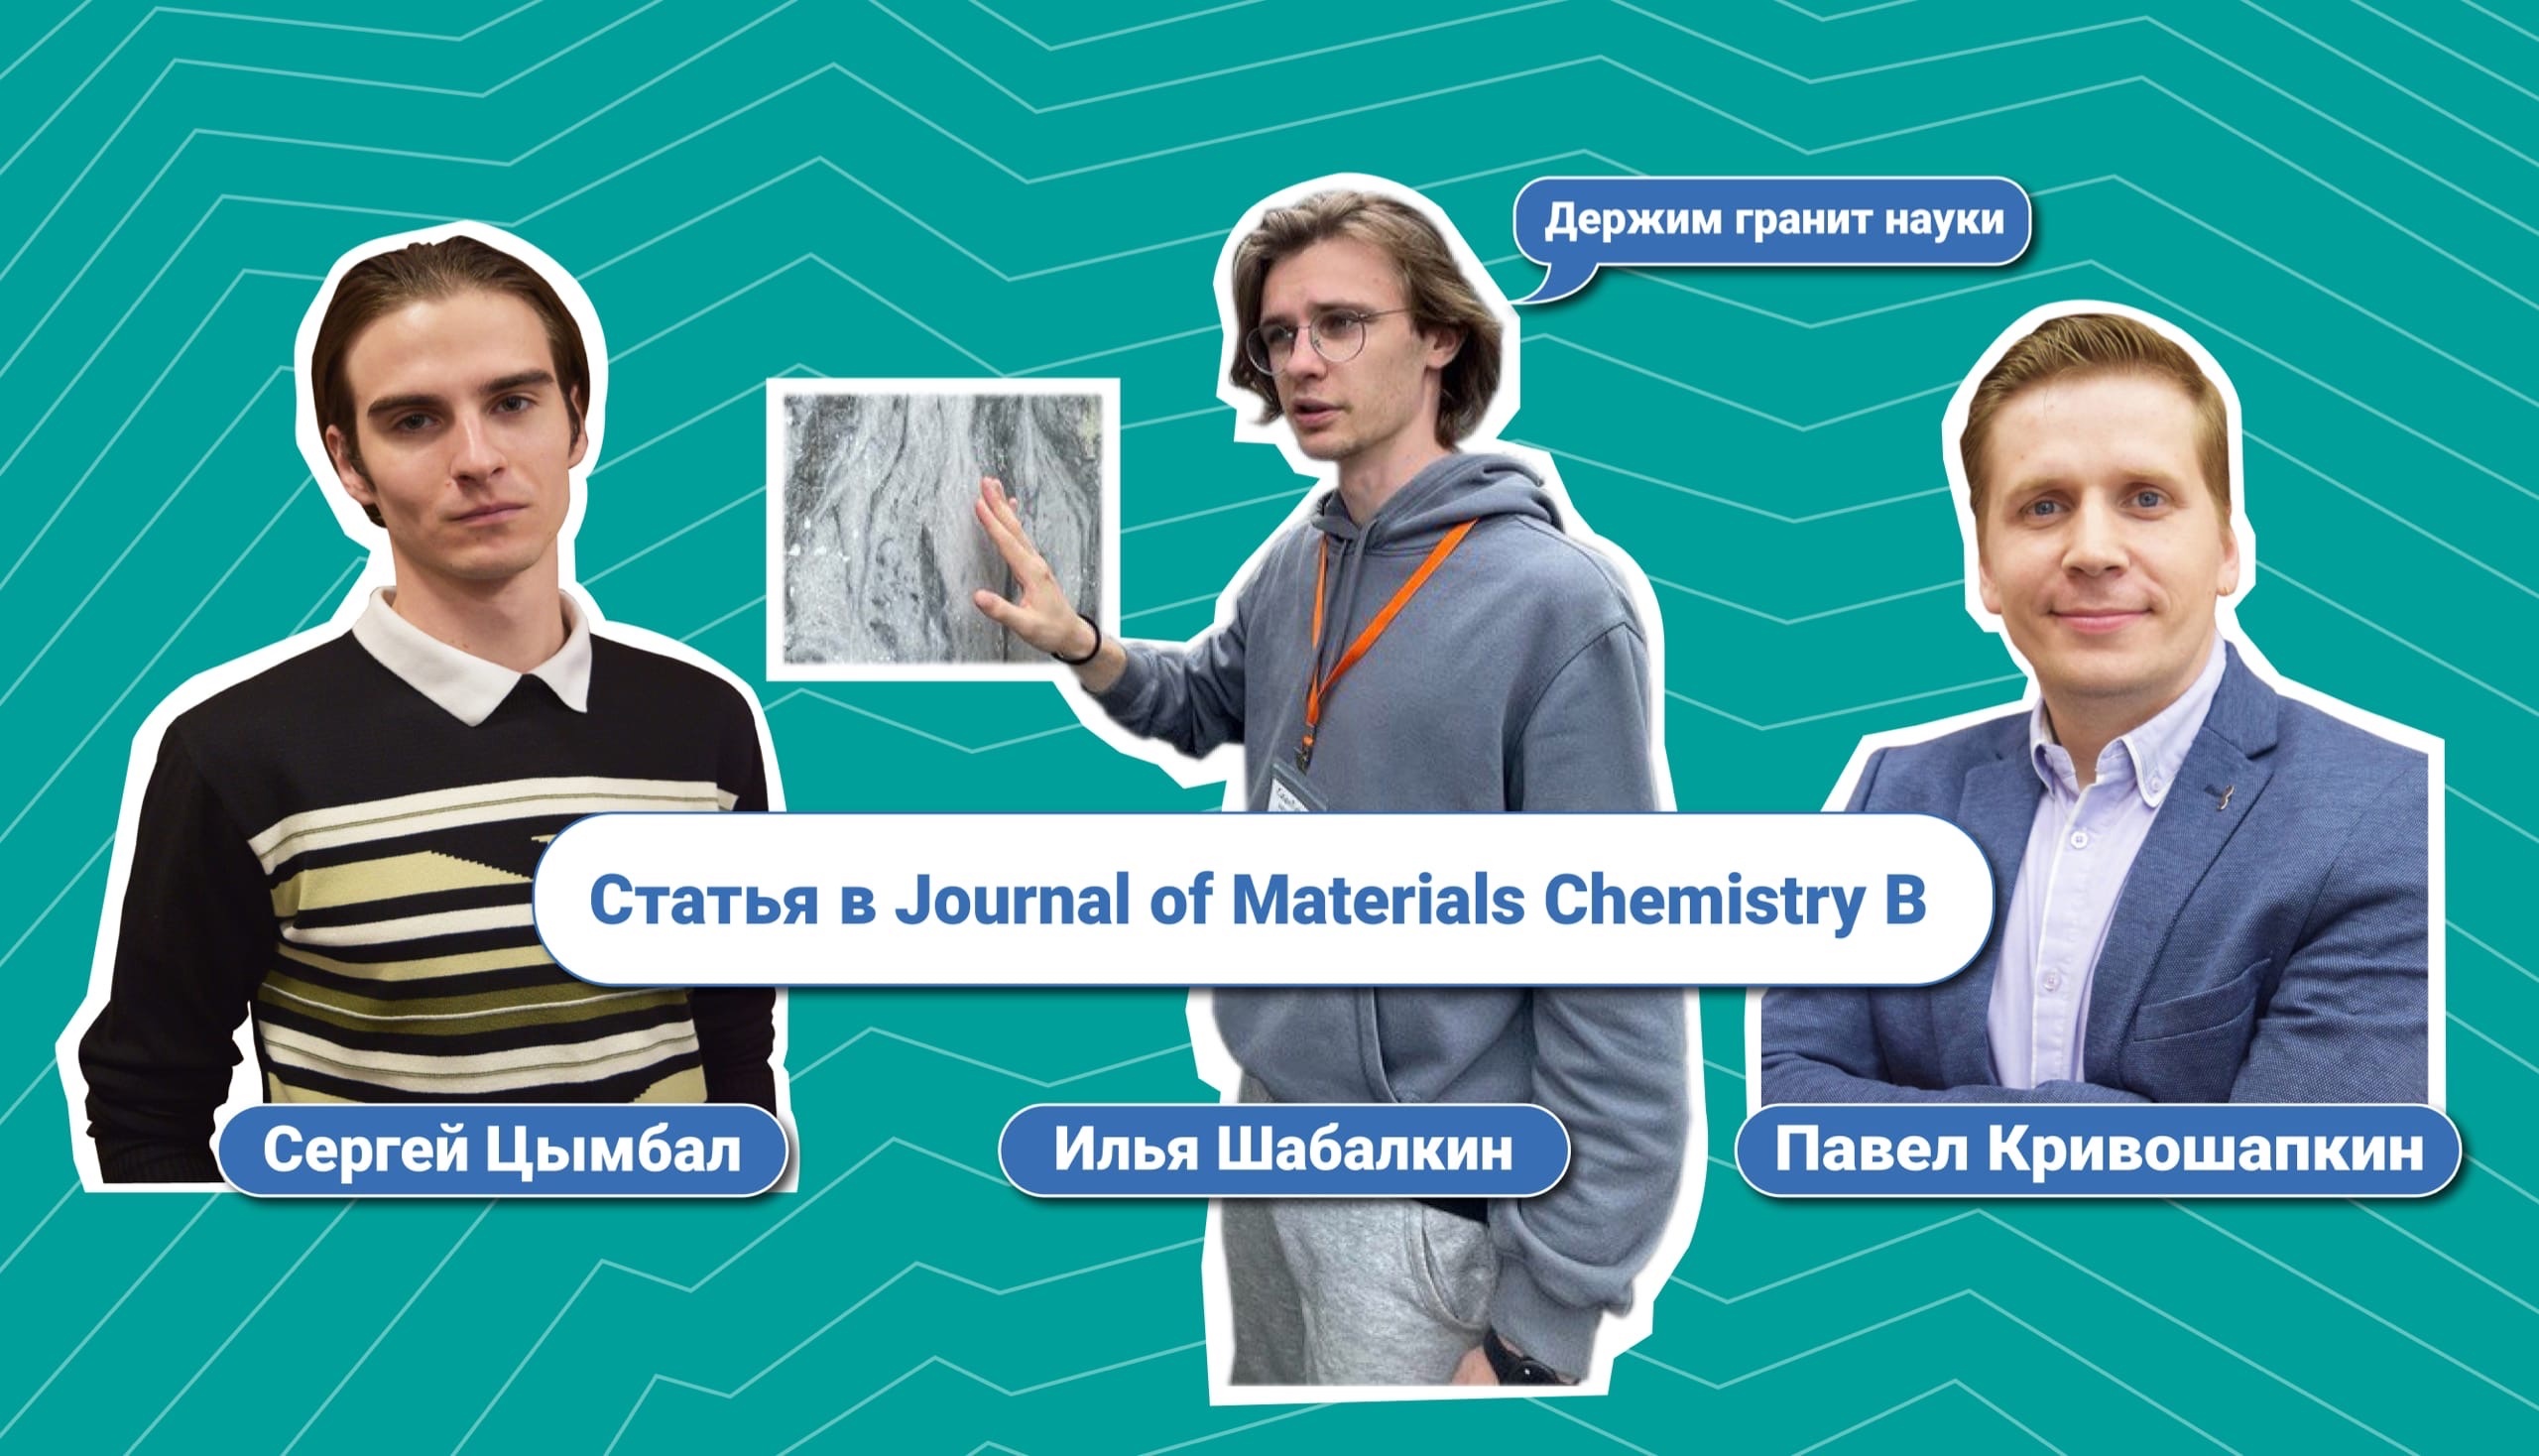 Студент программы вместе с руководителем опубликовали статью в Journal of Materials Chemistry B